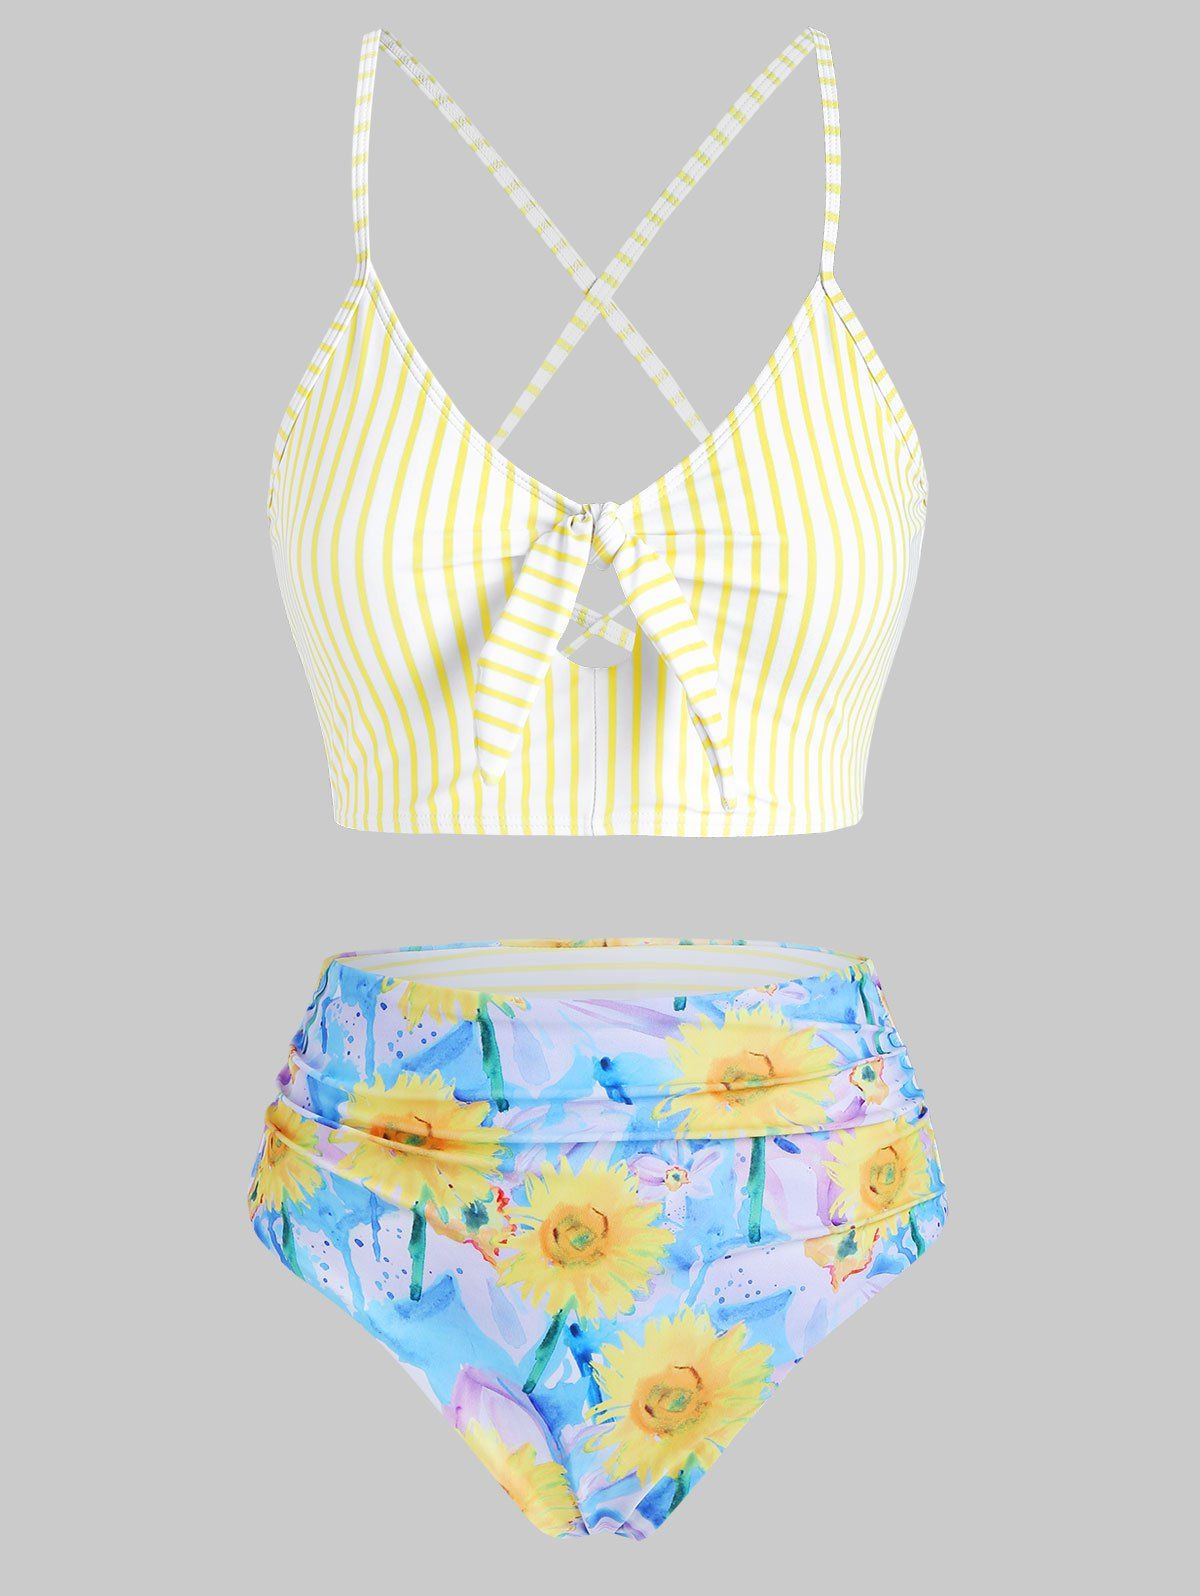 Vacation Swimsuit Striped Sunflower Crisscross Lace-up Cut Out Reversible Tankini Swimwear - YELLOW 2XL